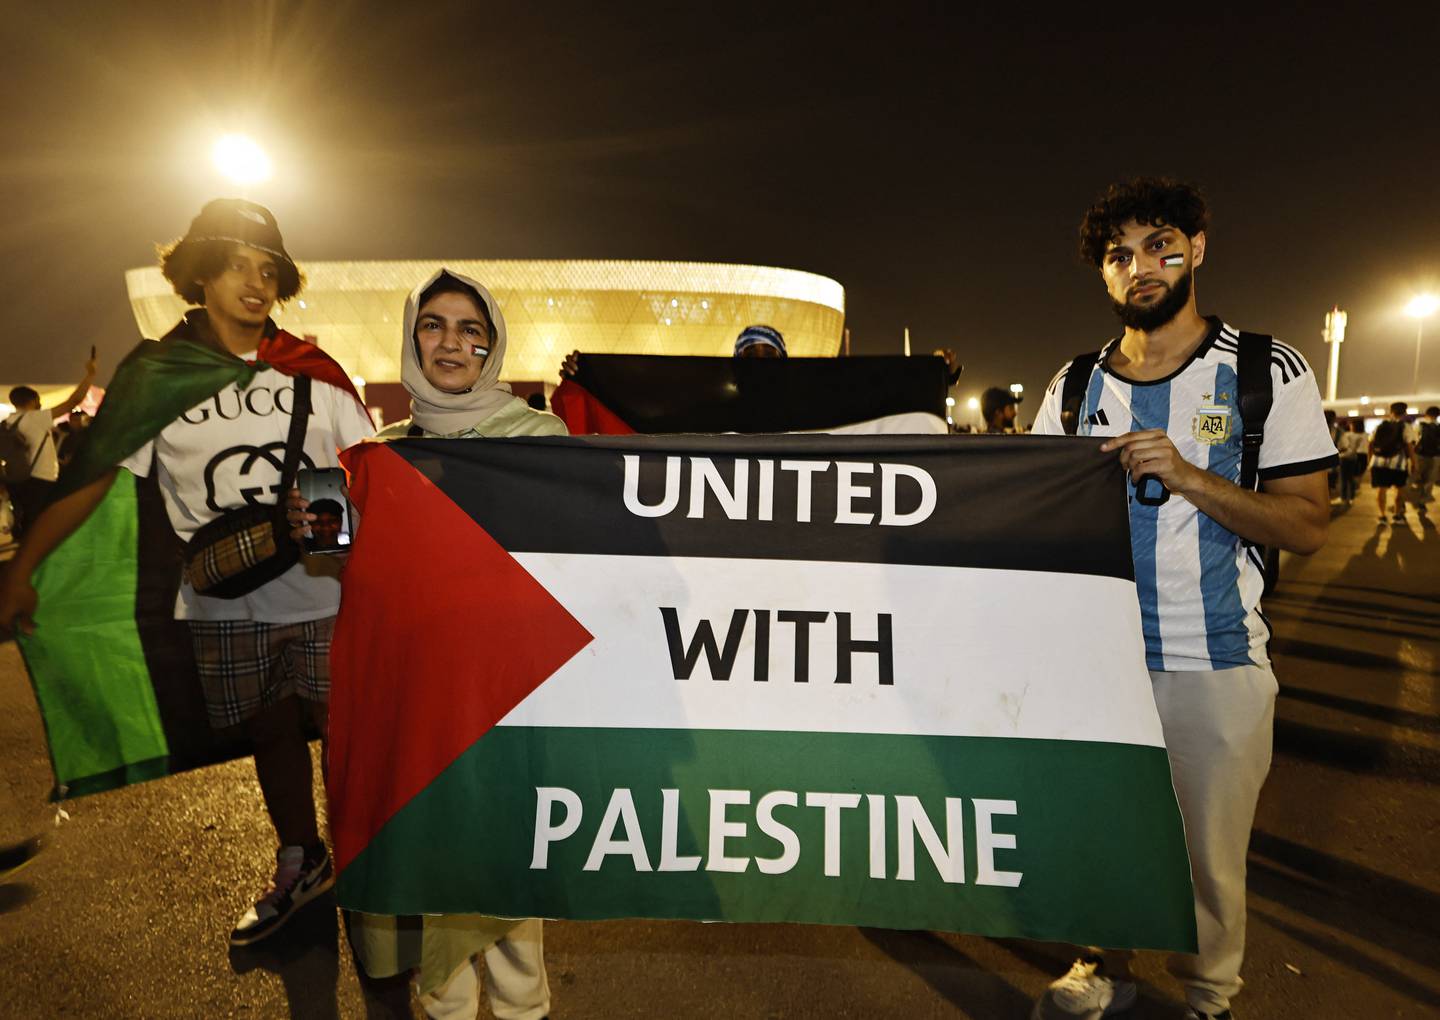 Også før semifinalen mellom Argentina og Kroatia tirsdag stilte fans opp med et palestinsk flagg, dette med påskriften "United with Palestine".